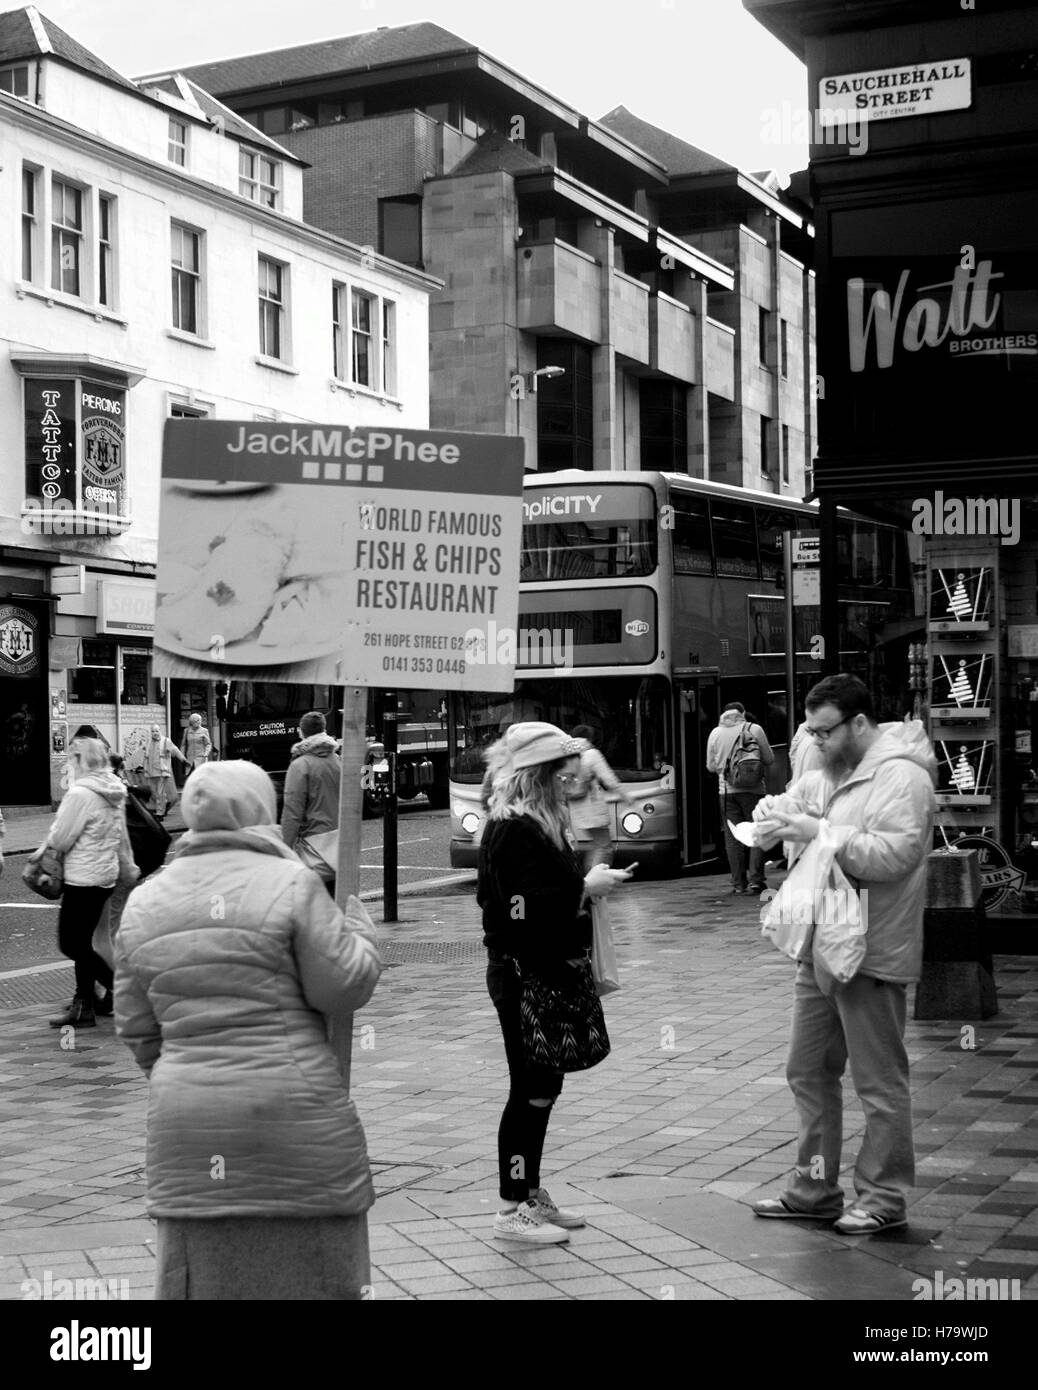 Type de panneau publicitaire rue fish and chips placard salaire minimum étudiant étranger travailleur Sauchiehall St pavement Banque D'Images